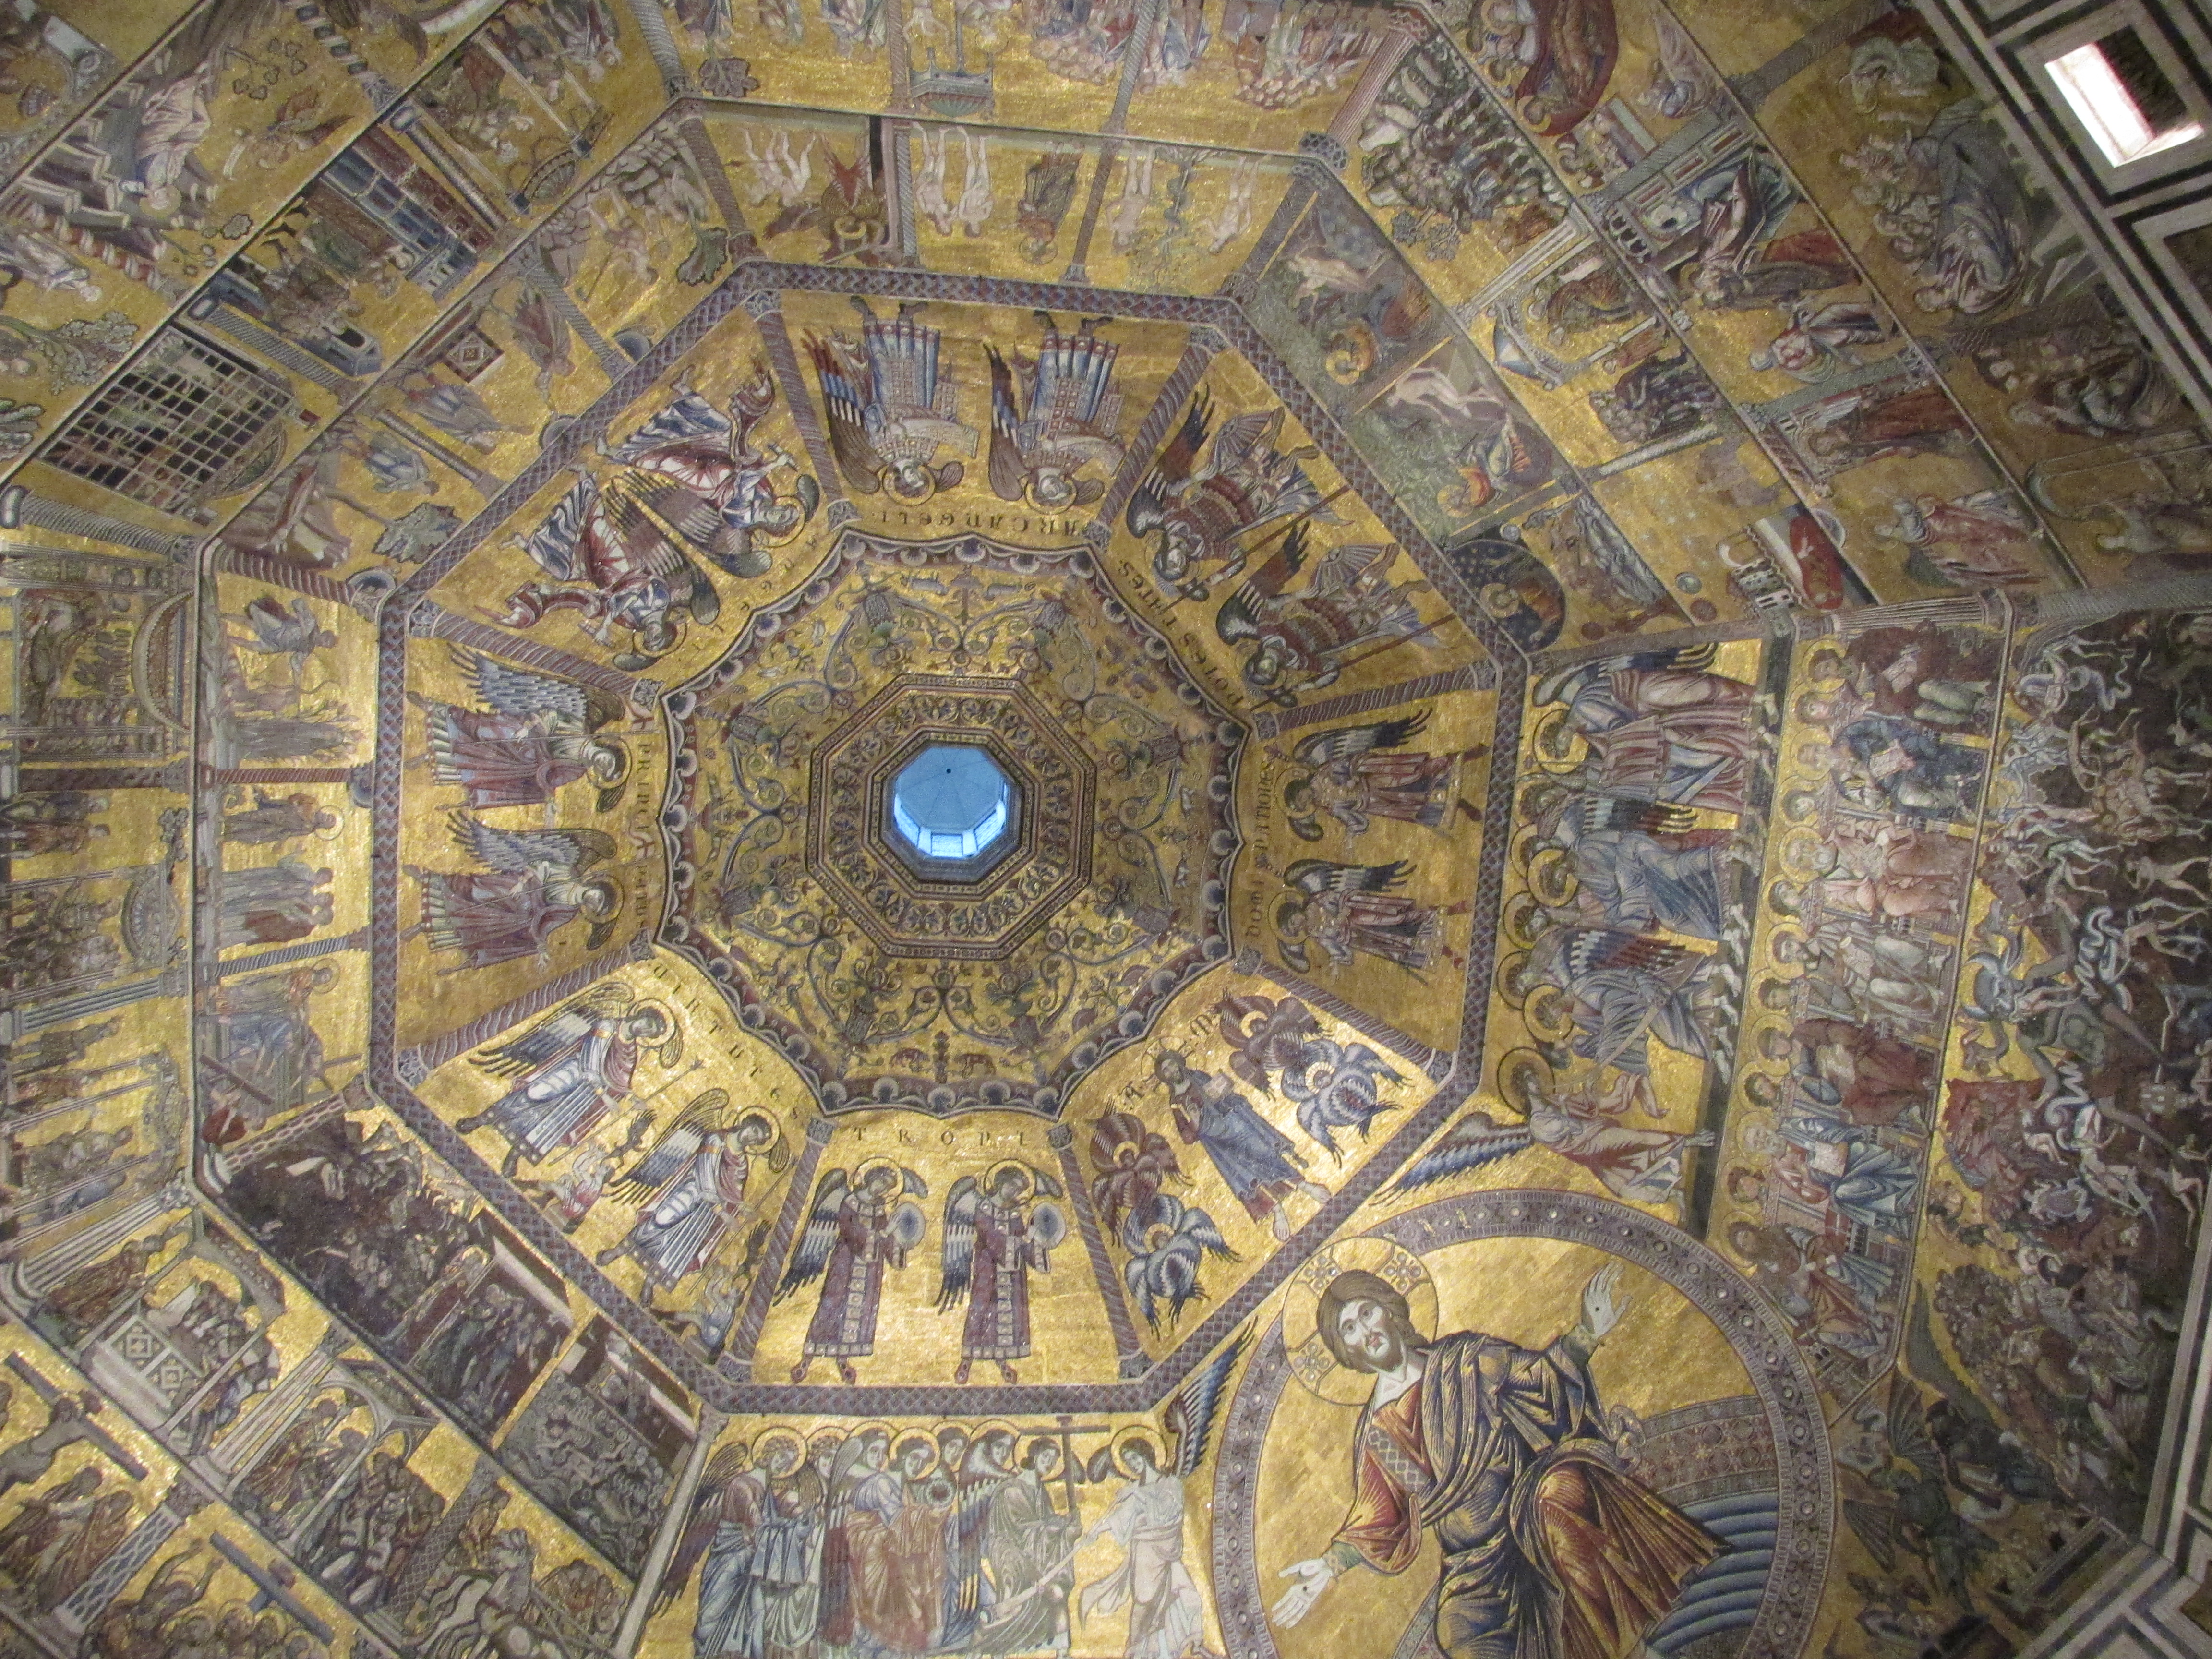 img 2813 - Visitando la Catedral Santa Maria del Fiore de Florencia II/III